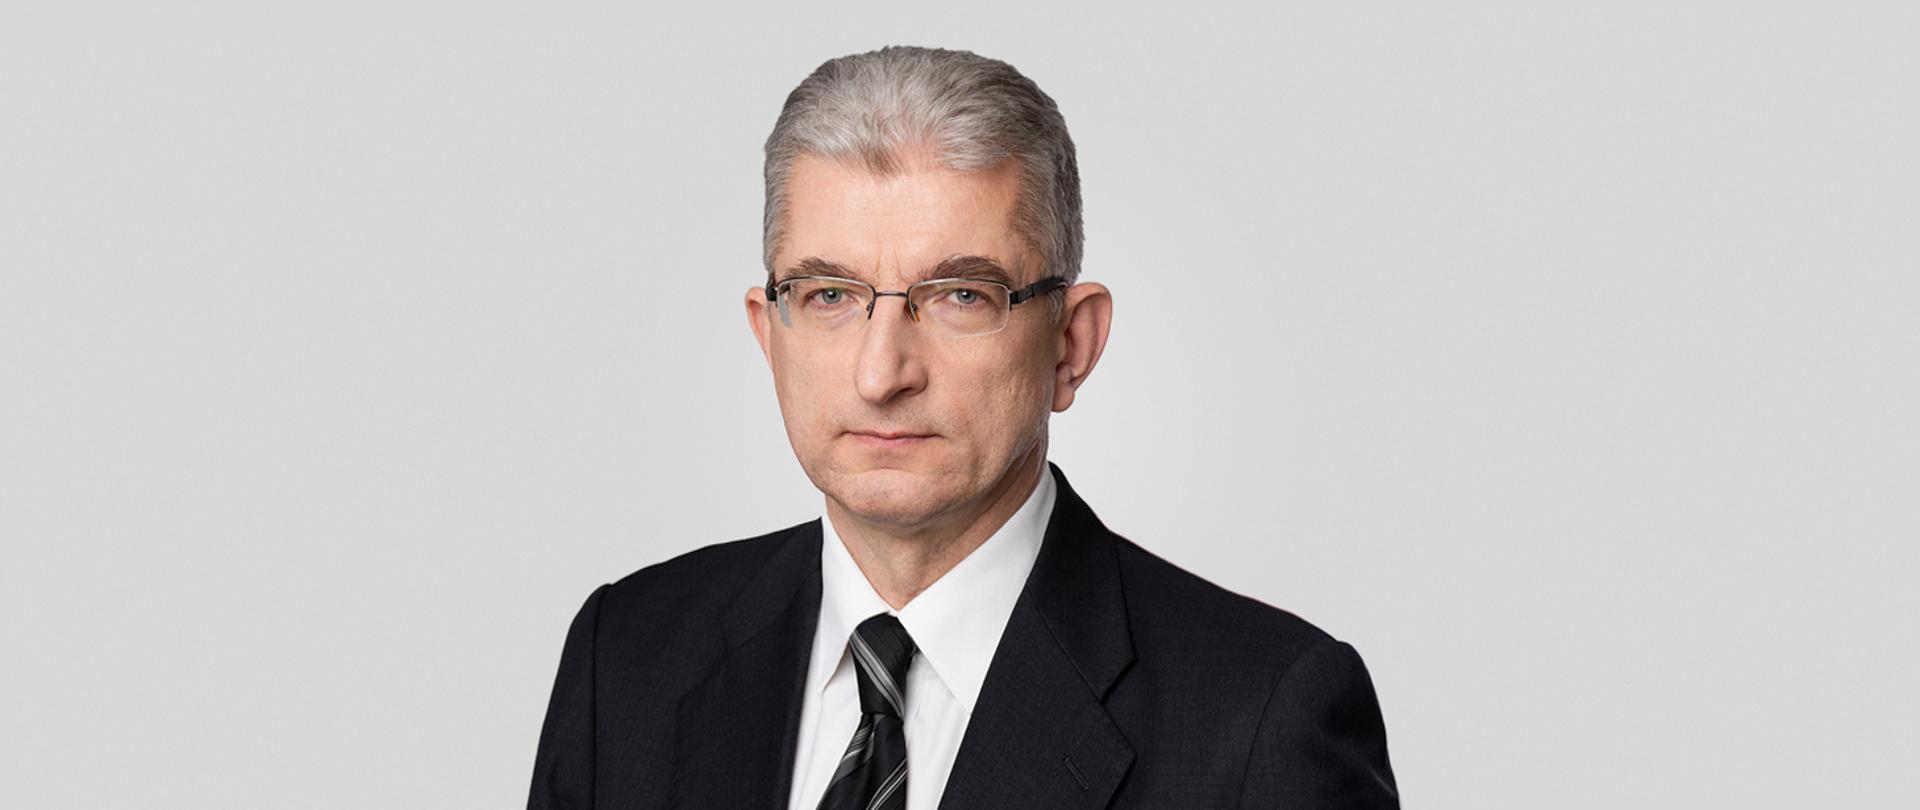 Wacław Turek Director General